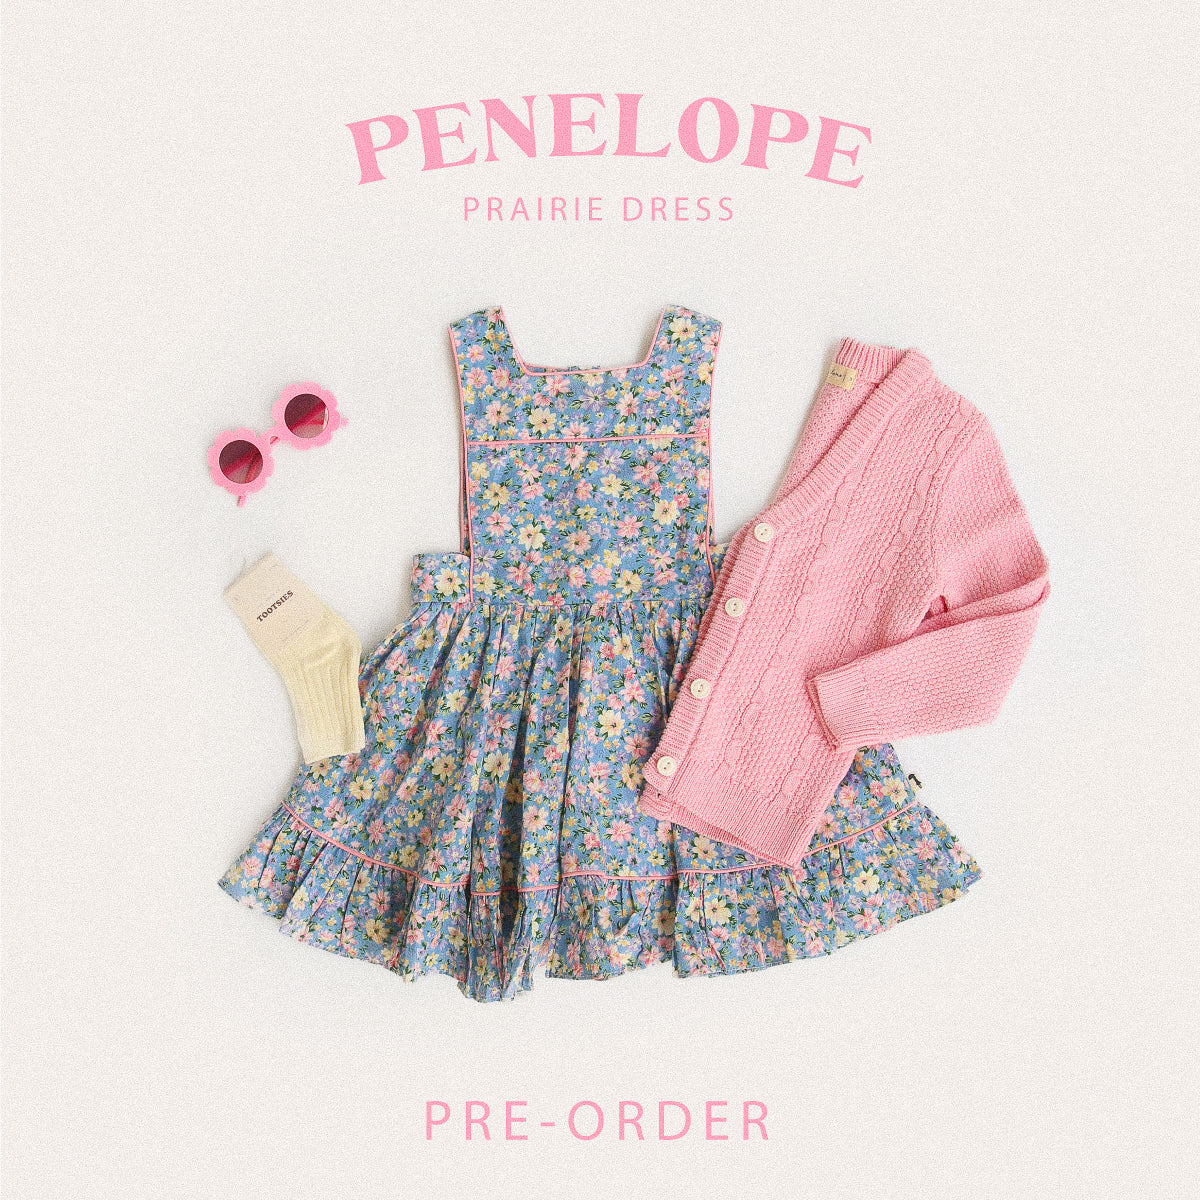 PRE-ORDER Penelope Prairie Dress